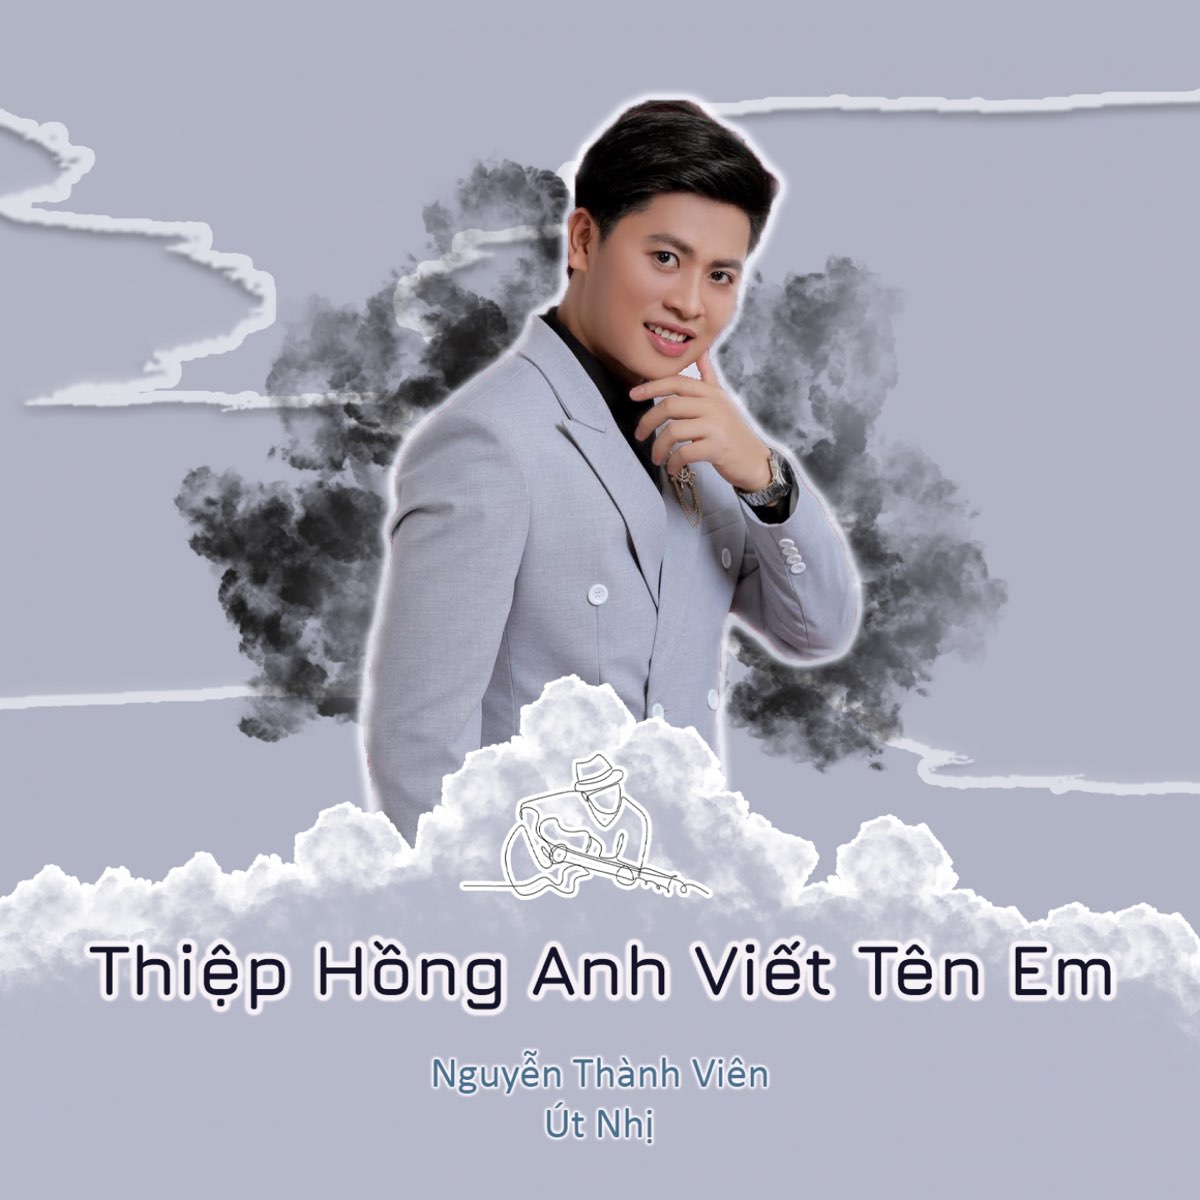 Thiệp Hồng Anh Viết Tên Em (feat. Út Nhị & Star Online) - Single ...